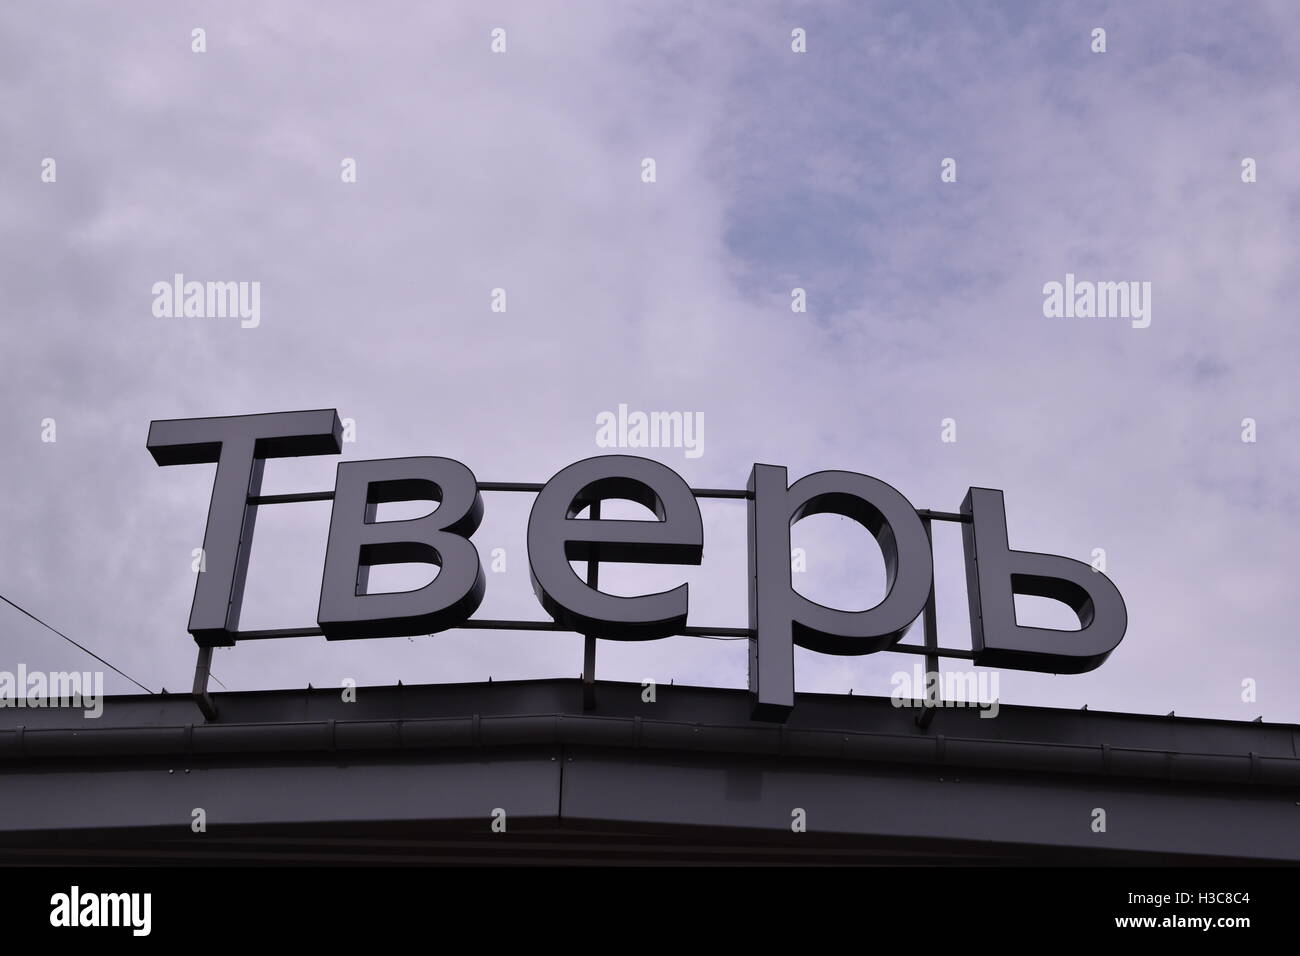 Segno di sità Тверь presso la stazione ferroviaria in Russia. L'iscrizione sul segno - Tver. Foto Stock